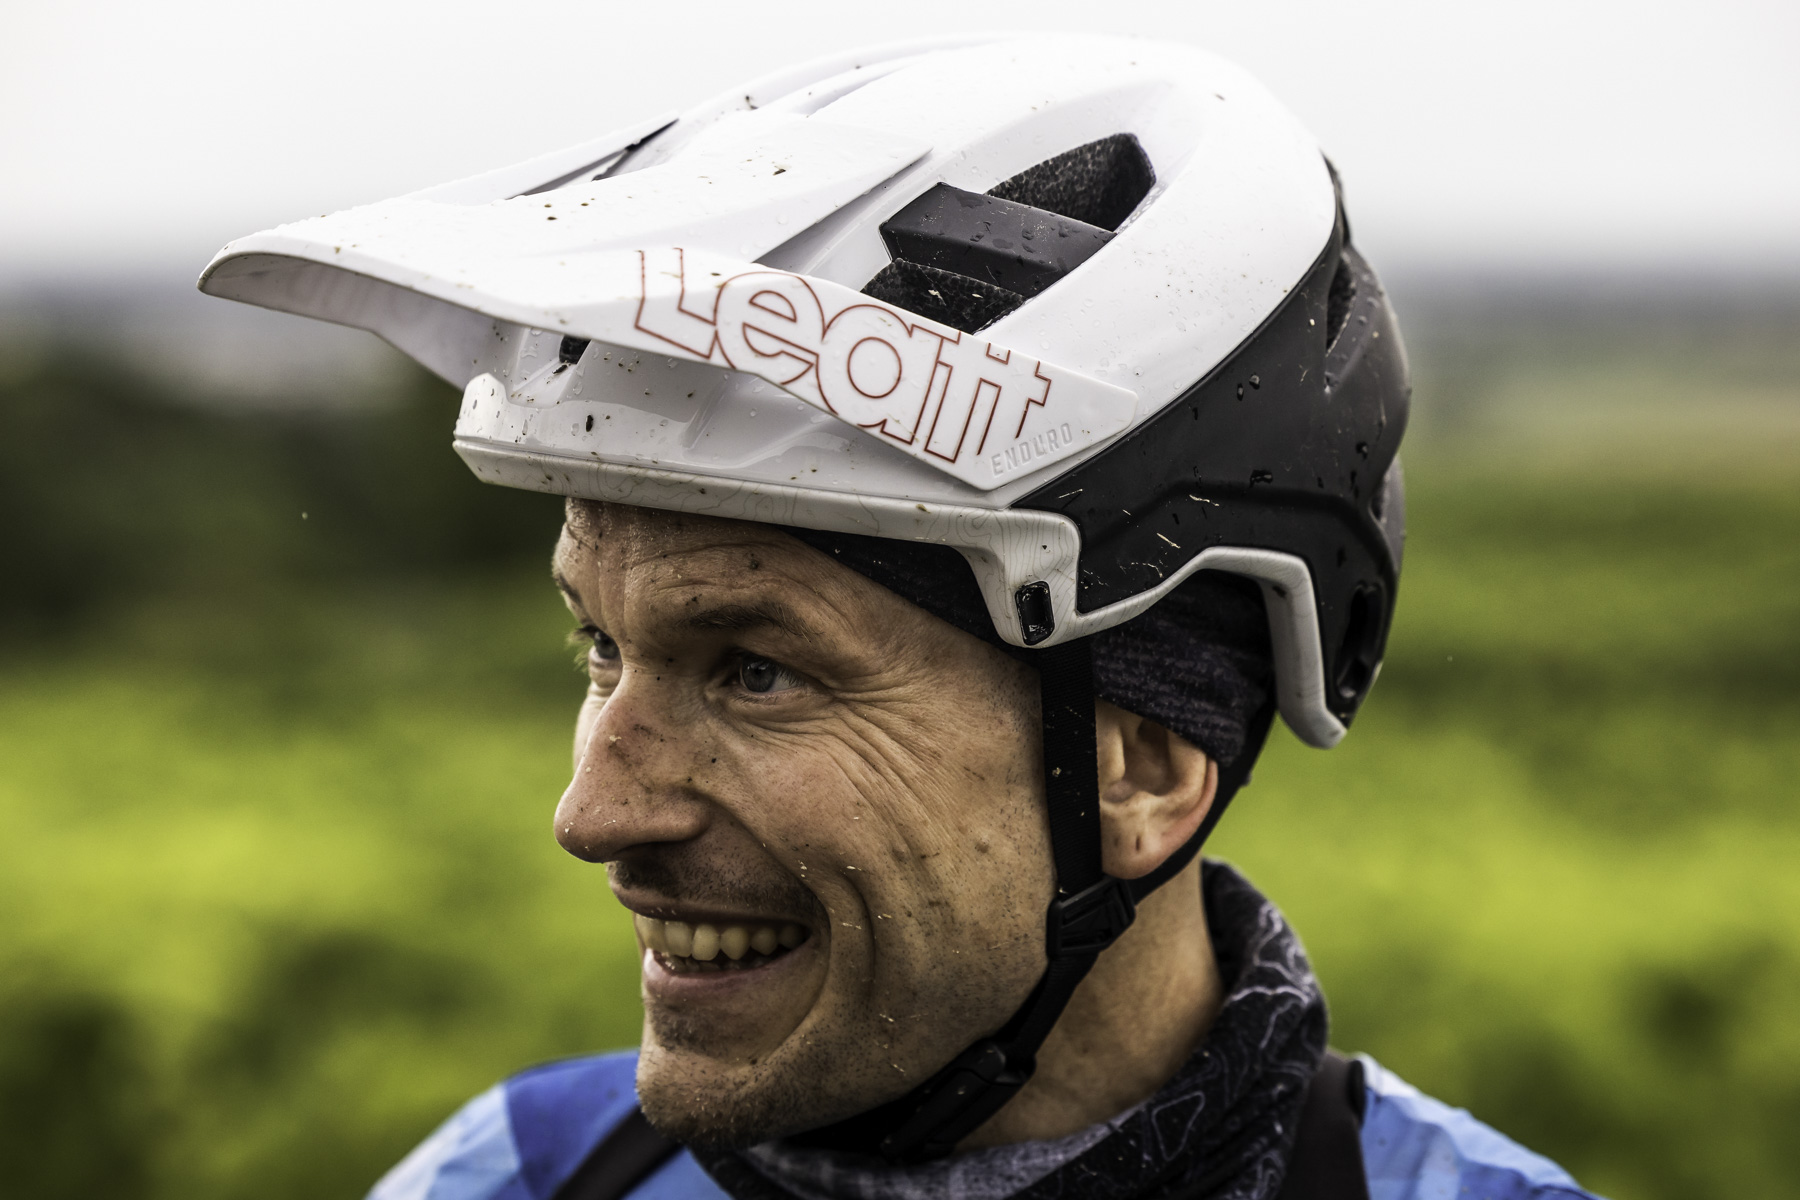 Foto di Claudio Riotti durante il test del casco Leatt Enduro 3.0 nel fango